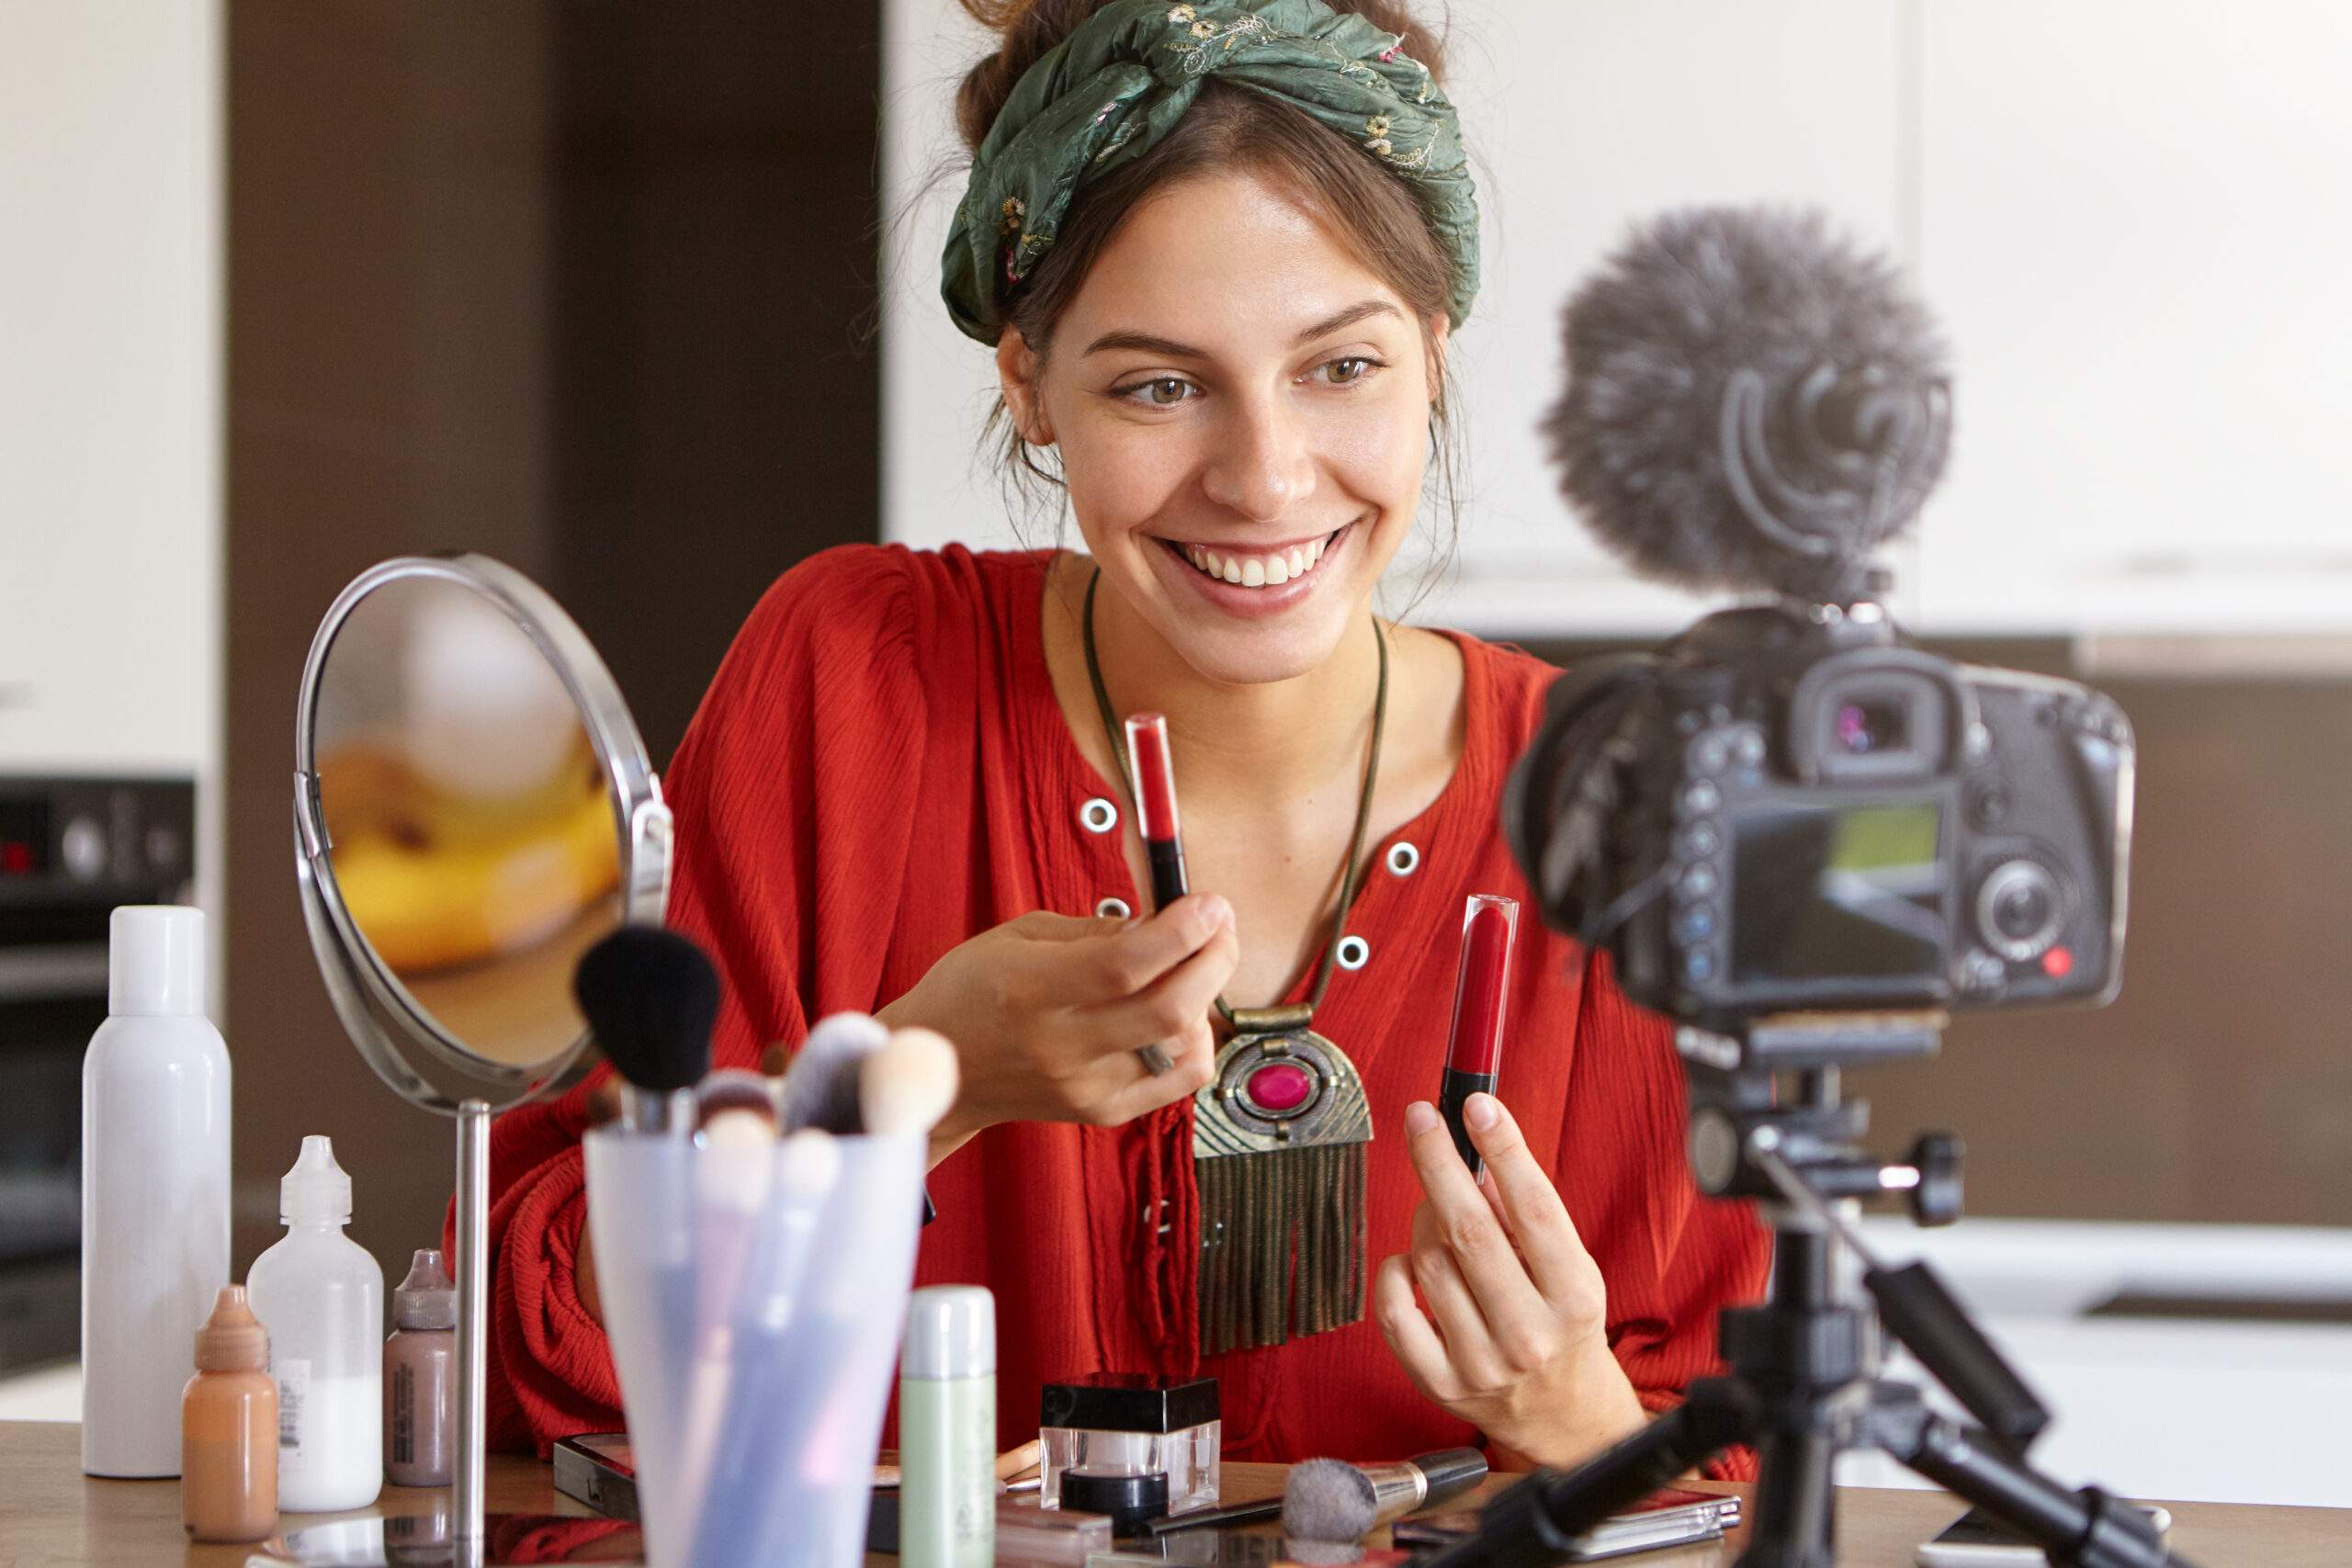 mulher mostra produtos de beleza para uma câmera profissional em um cenário simples